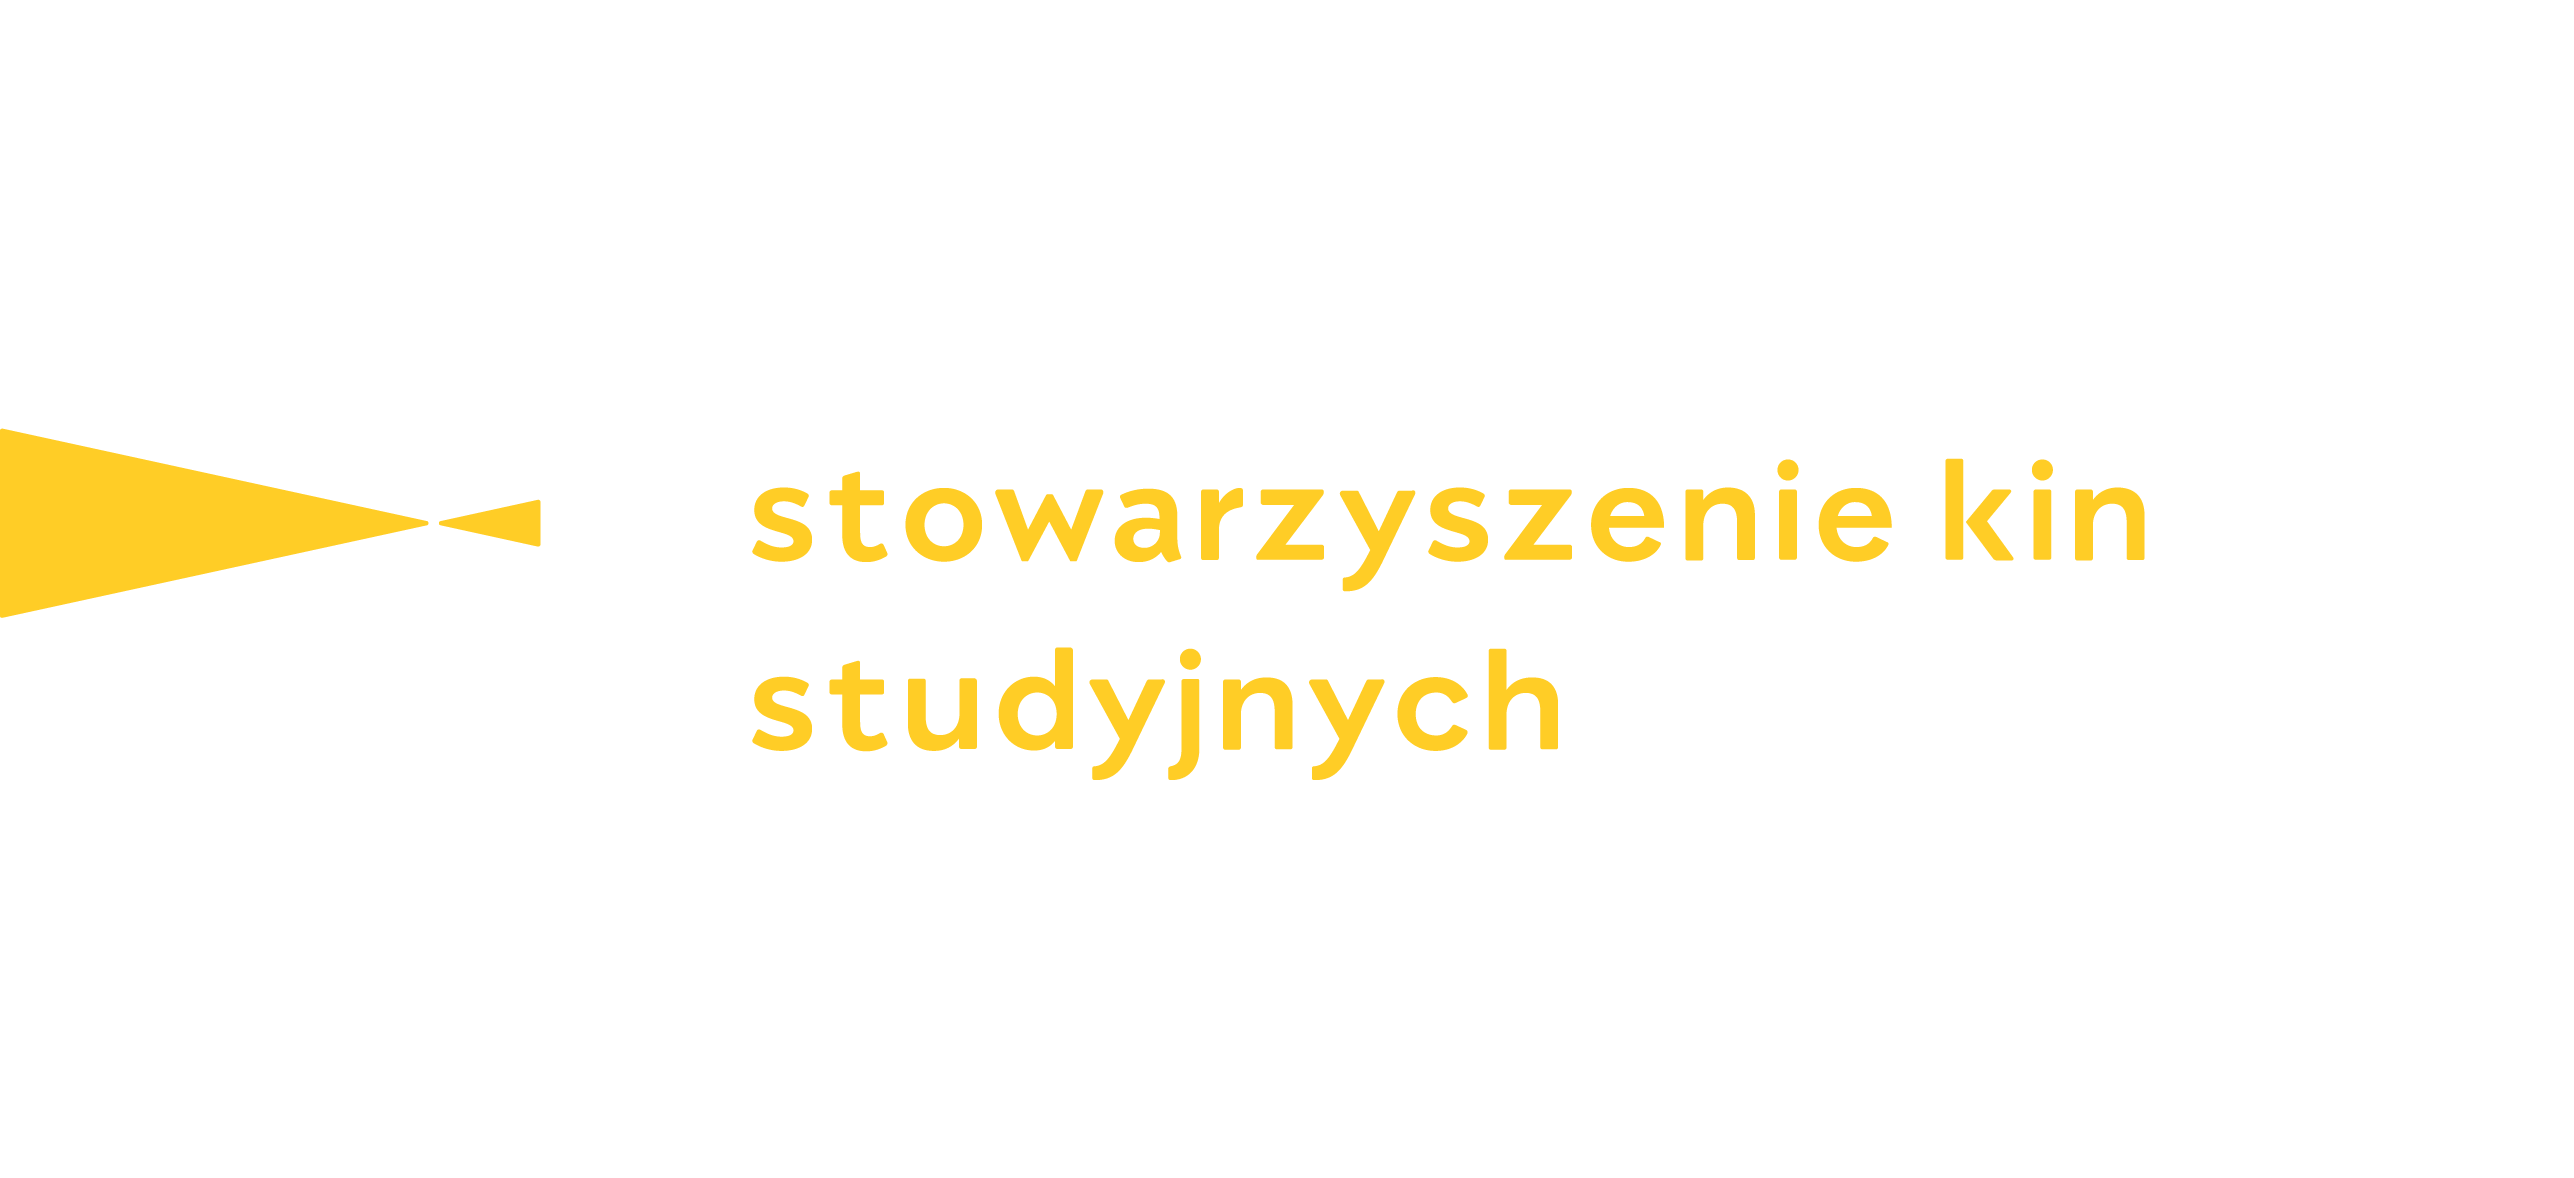 stowarzyszeniekinstudyjnych.pl